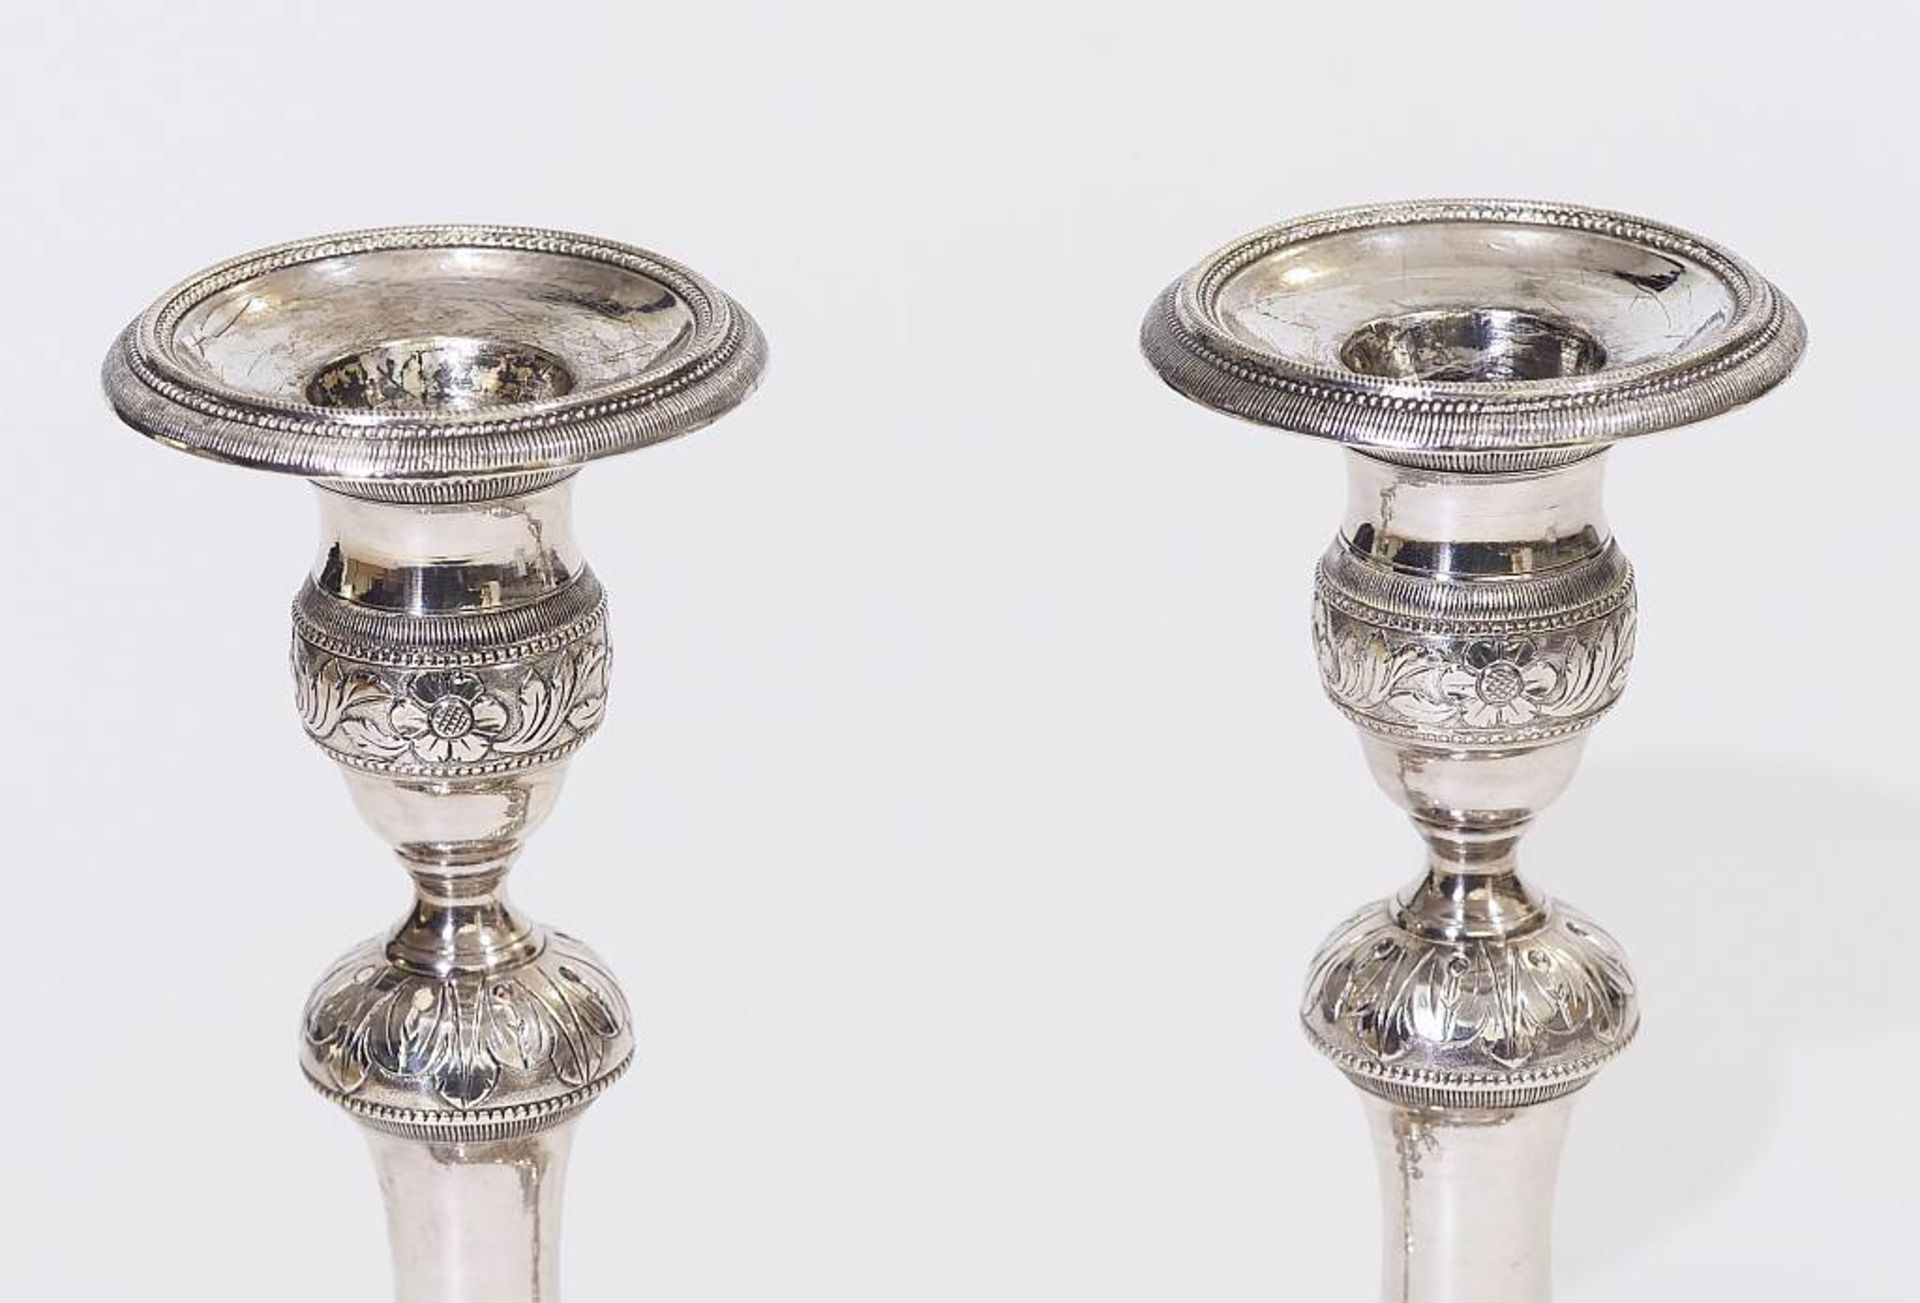 Paar Kerzenleuchter, datiert 1848. Paar Kerzenleuchter, datiert 1848. Silber, getrieben, graviert. - Image 3 of 7